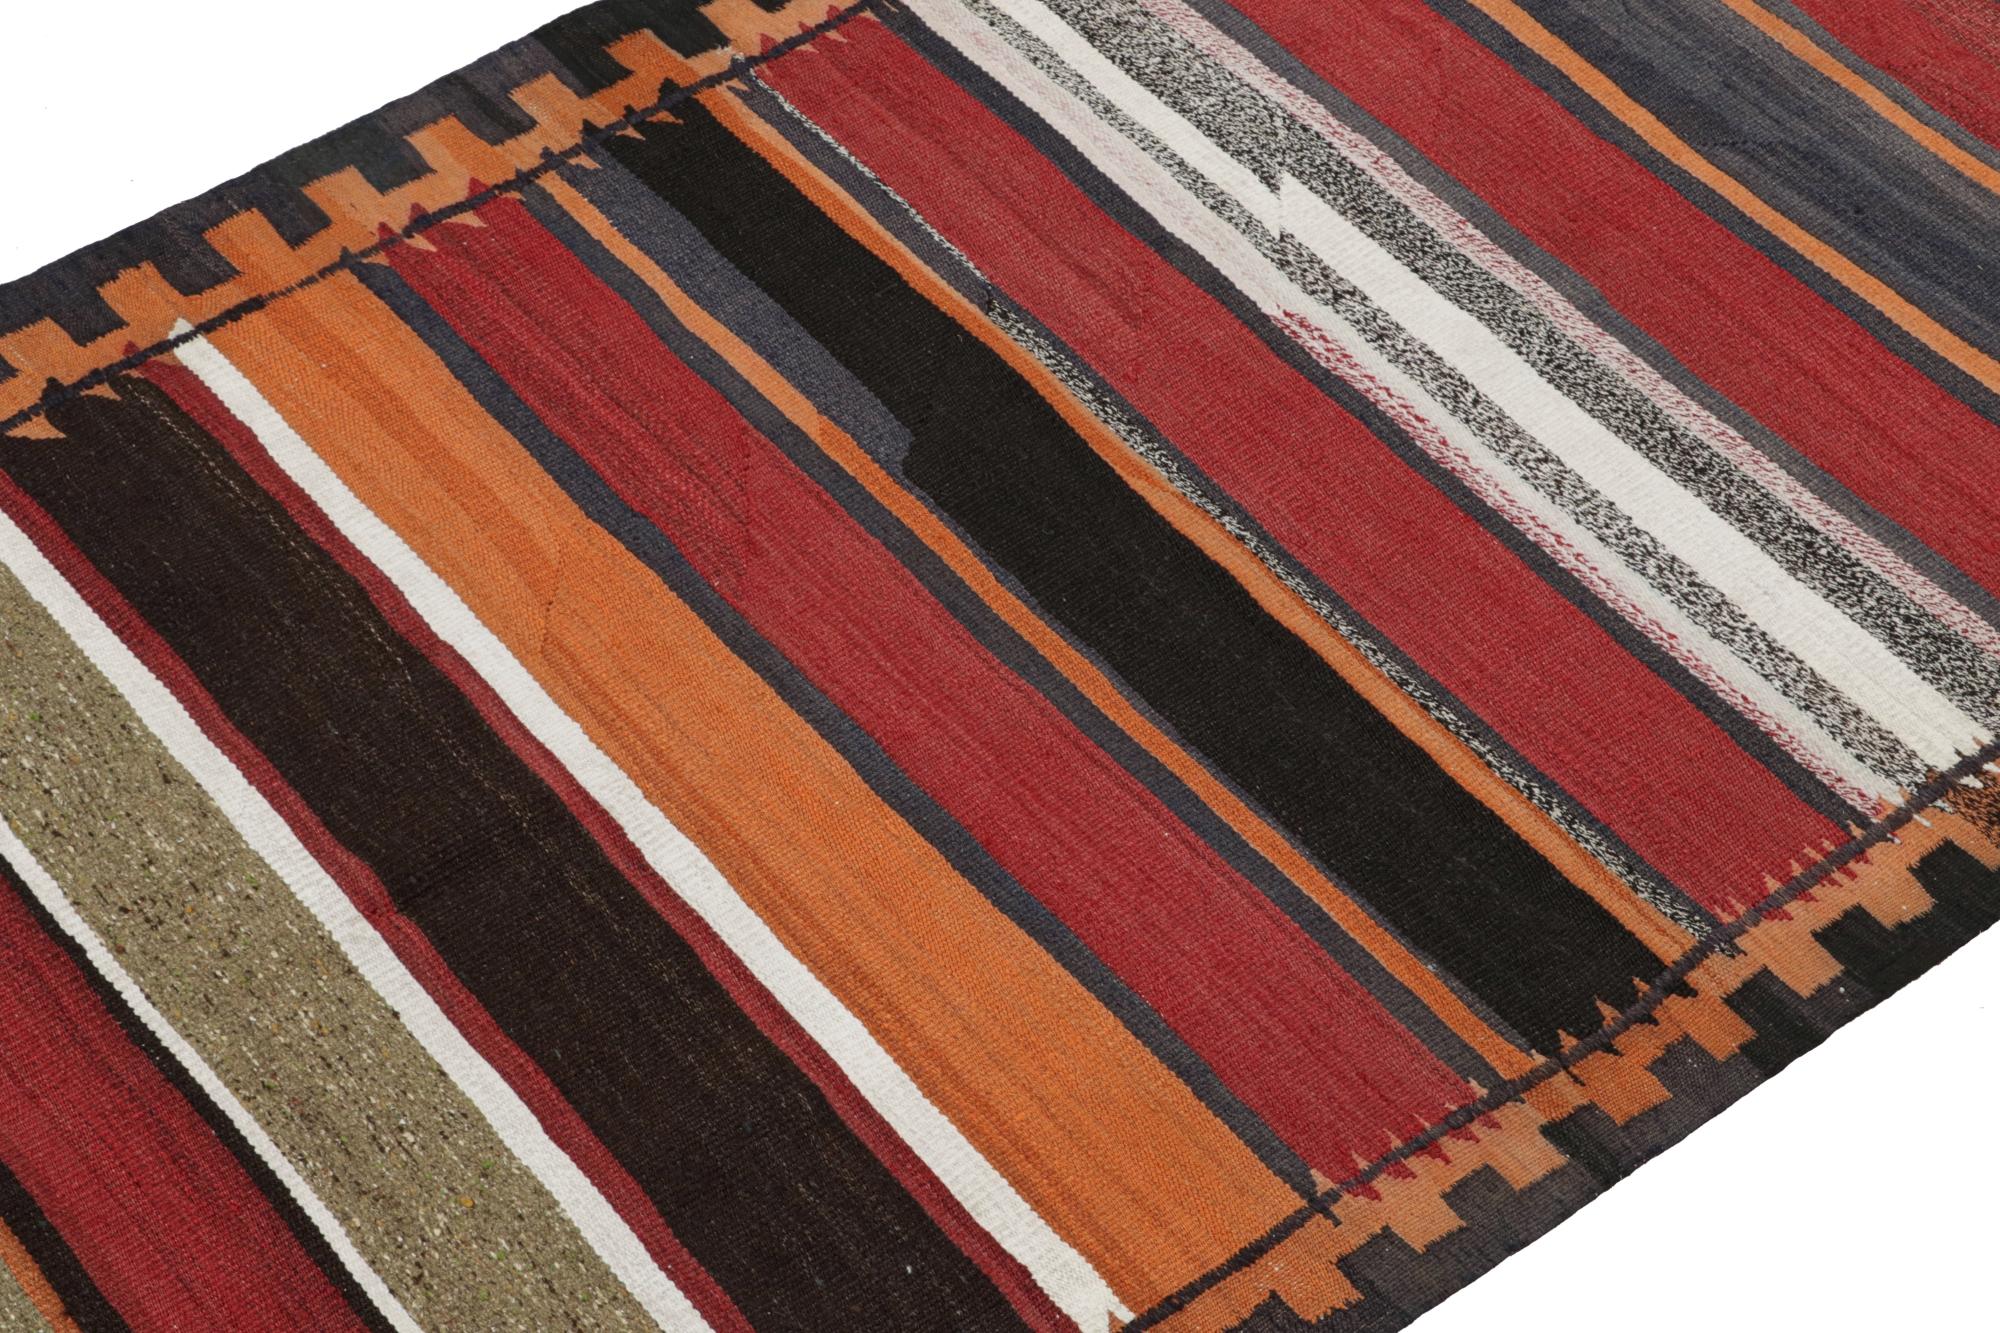 Dieser alte persische Kelim 4x9 ist vermutlich ein Schahsavan-Stammes-Teppich aus der Mitte des Jahrhunderts, der um 1950-1960 in Wolle gewebt wurde.

Über das Design:

Dieser besondere Shahsavan-Teppich hat Streifen in vielen tiefen, warmen und